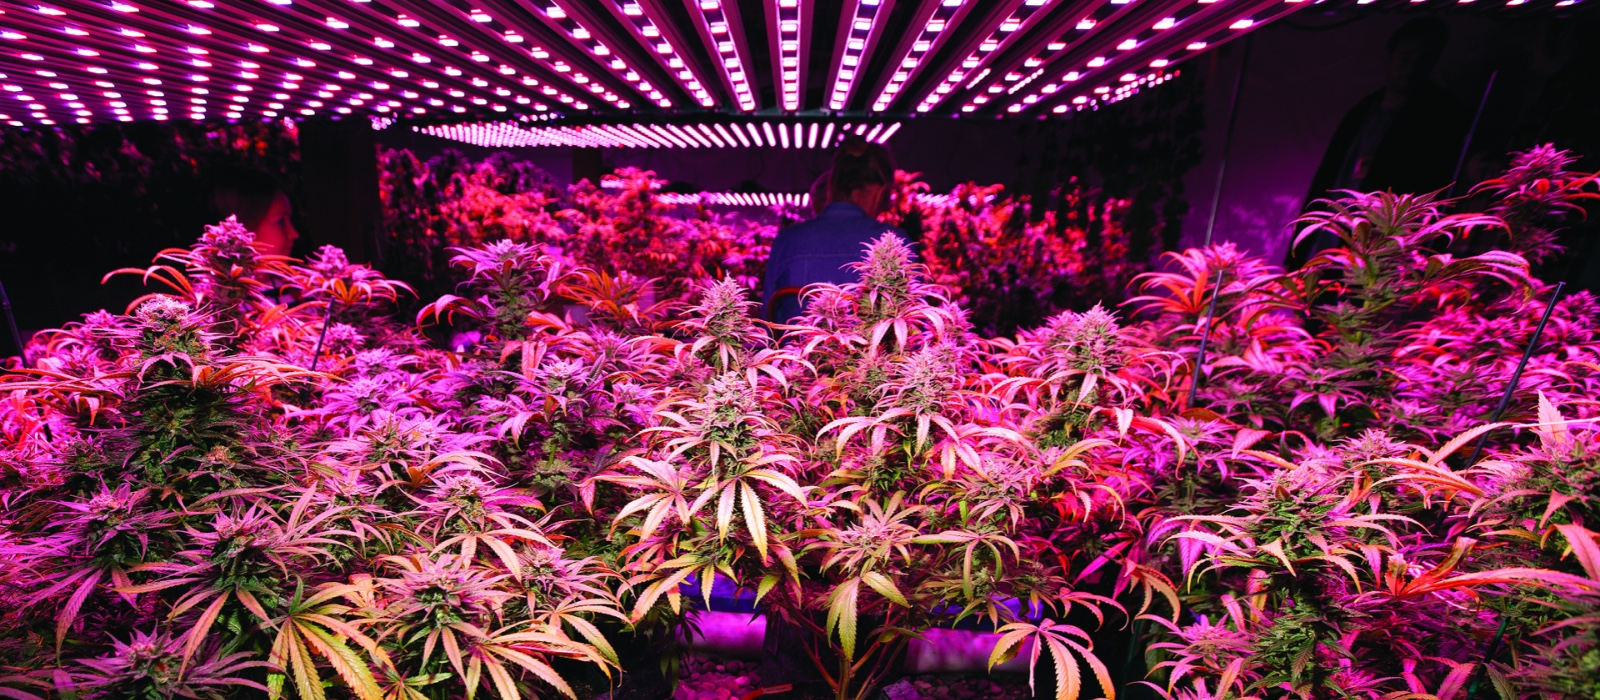 Lampes pour Culture de Cannabis : Choisir le Meilleur Éclairage Horticole